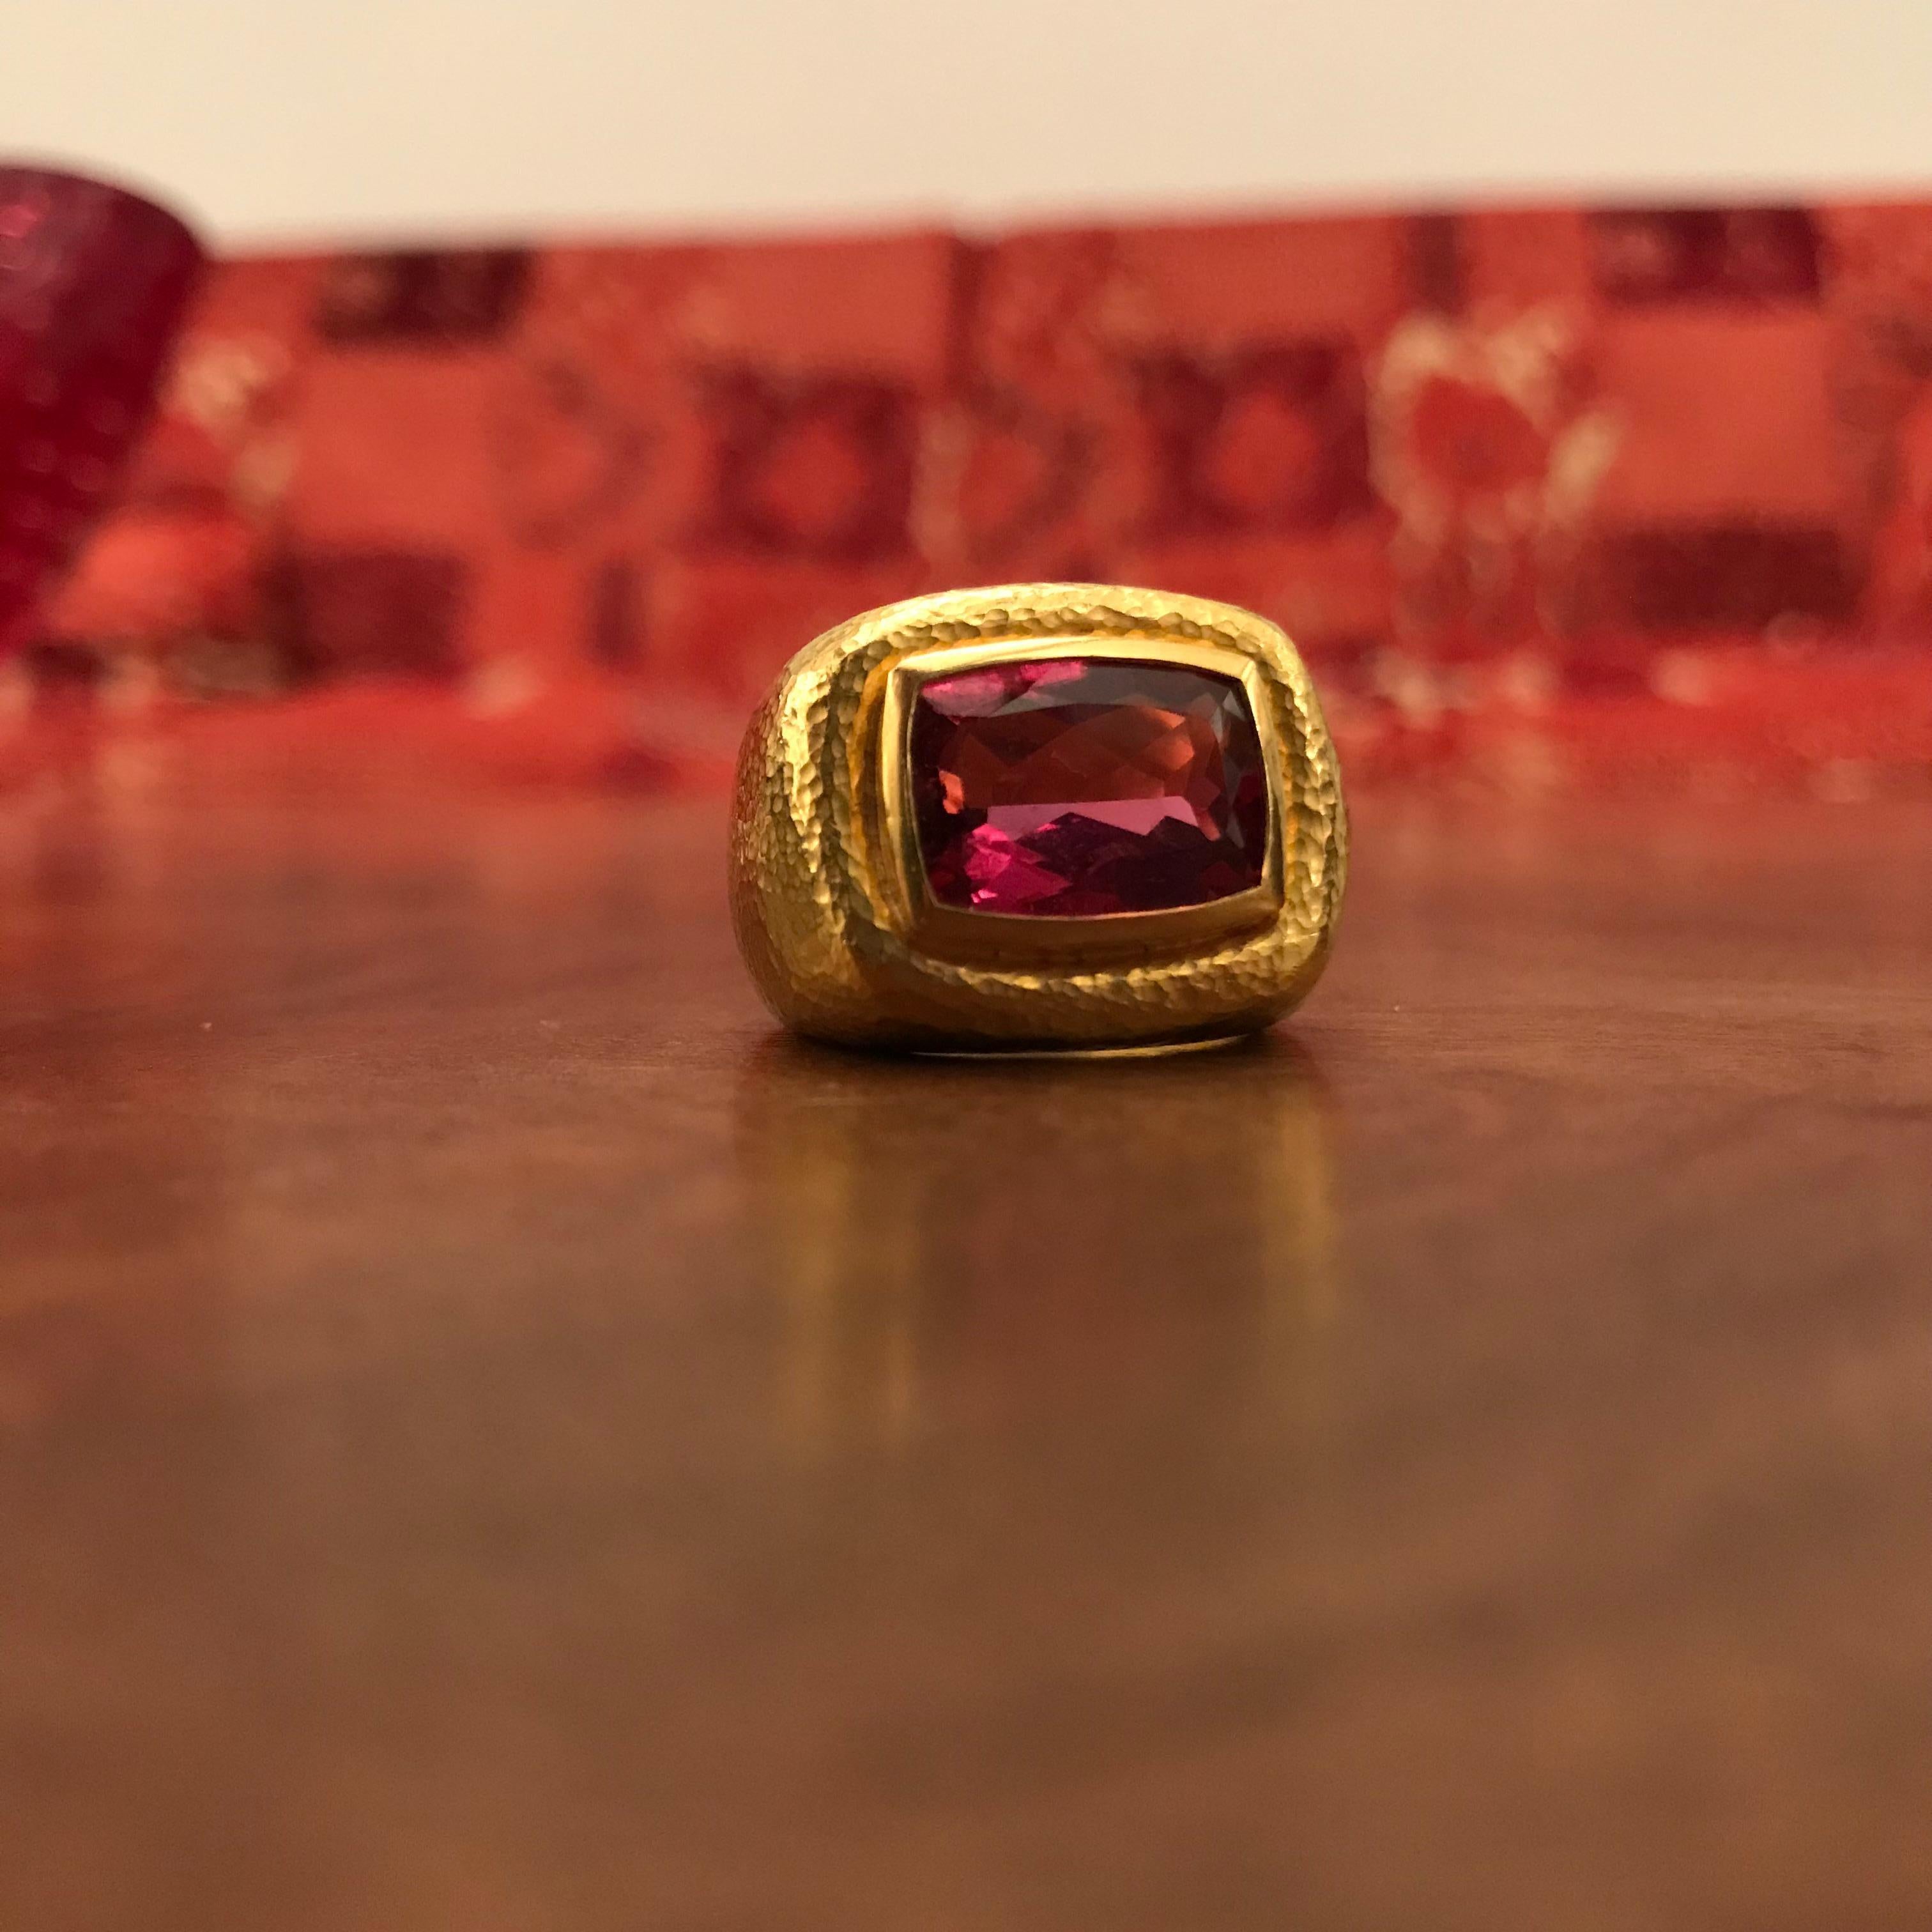 Sehr schöner Ring aus gehämmertem 22-karätigem Gelbgold, besetzt mit einem 6,2-karätigen Rubelit. Die Größe ist 8.
Entworfen von Colleen B. Rosenblat